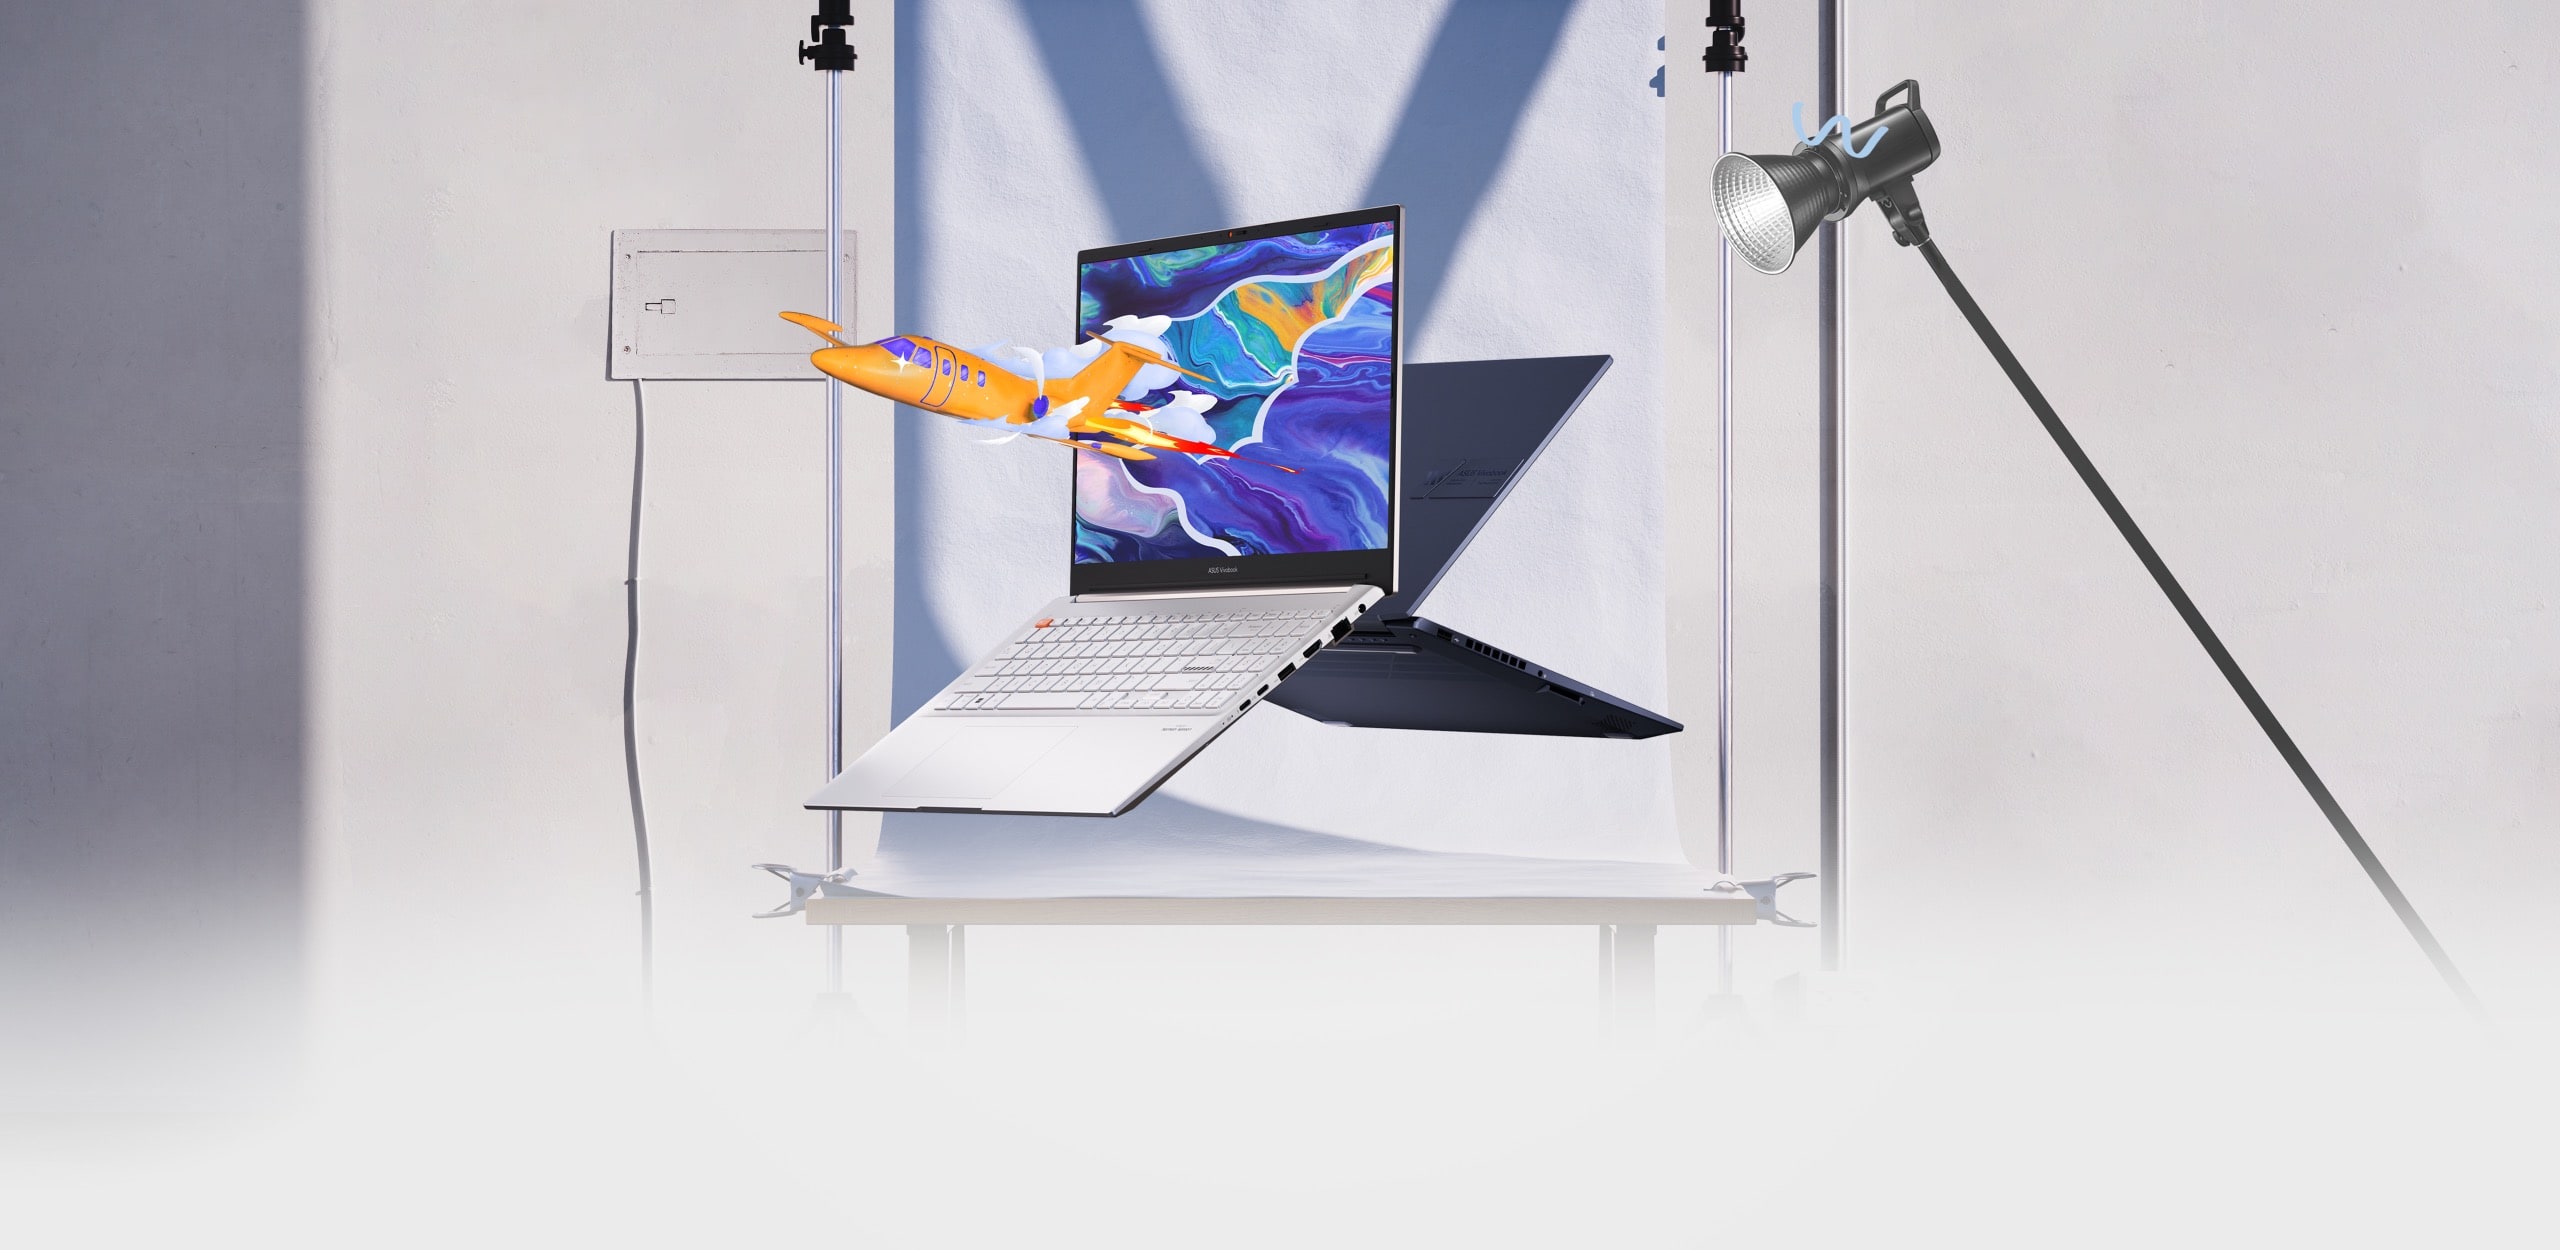 Hai chiếc laptop Vivobook Pro 15 OLED nhìn từ mặt trước và sau, một chiếc hiển thị hình ảnh một chiếc máy bay nổi bật trên hình ảnh nhiều màu sắc trên màn hình